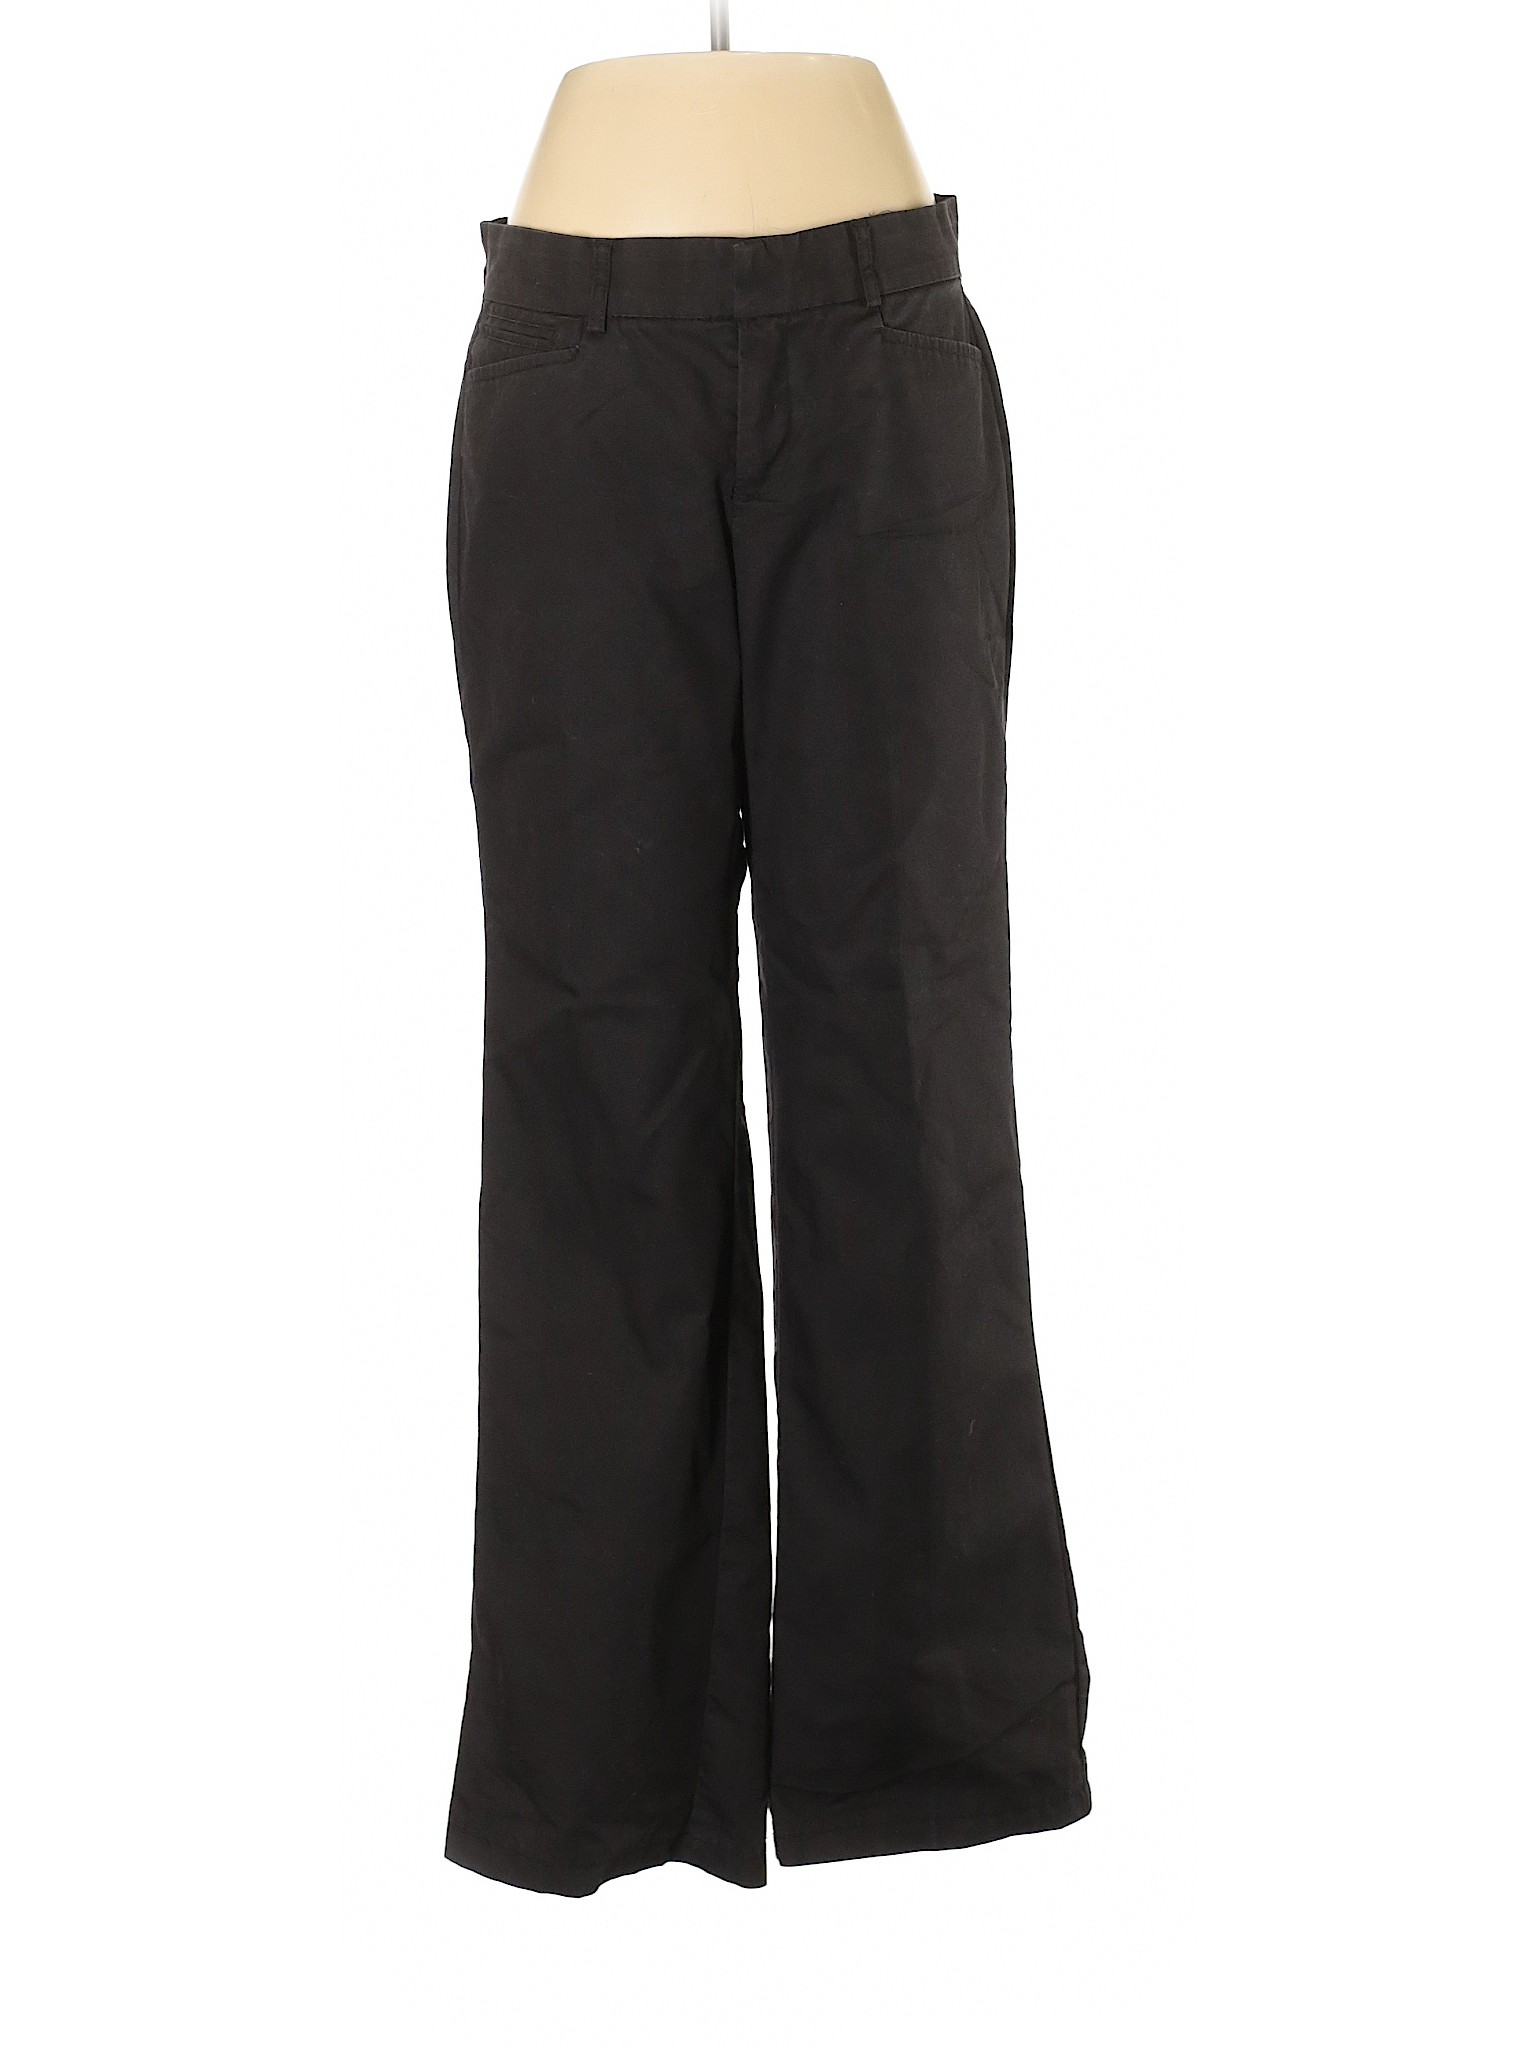 Dockers Women Black Dress Pants 8 | eBay